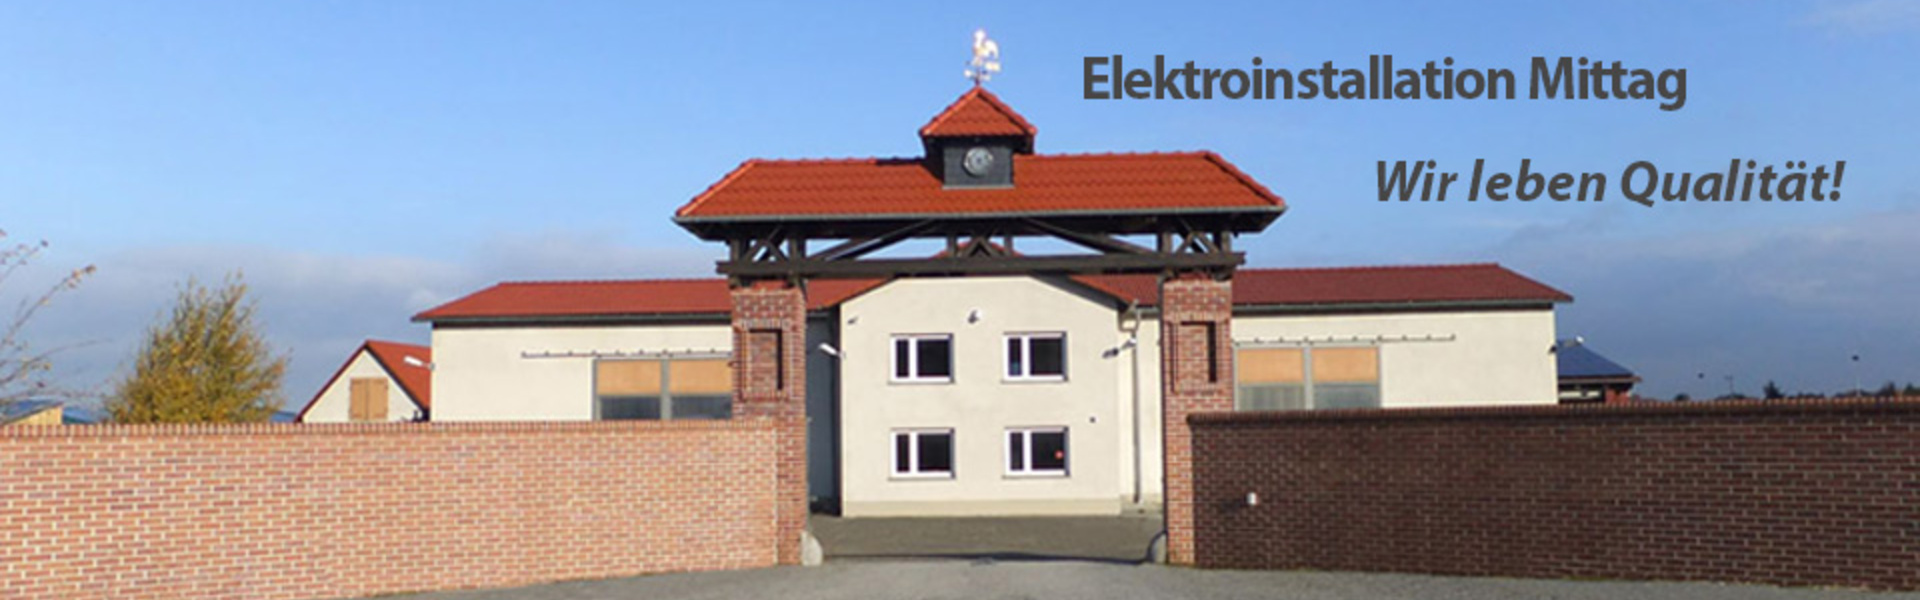 Elektroinstallation R. Mittag GmbH in Großkmehlen